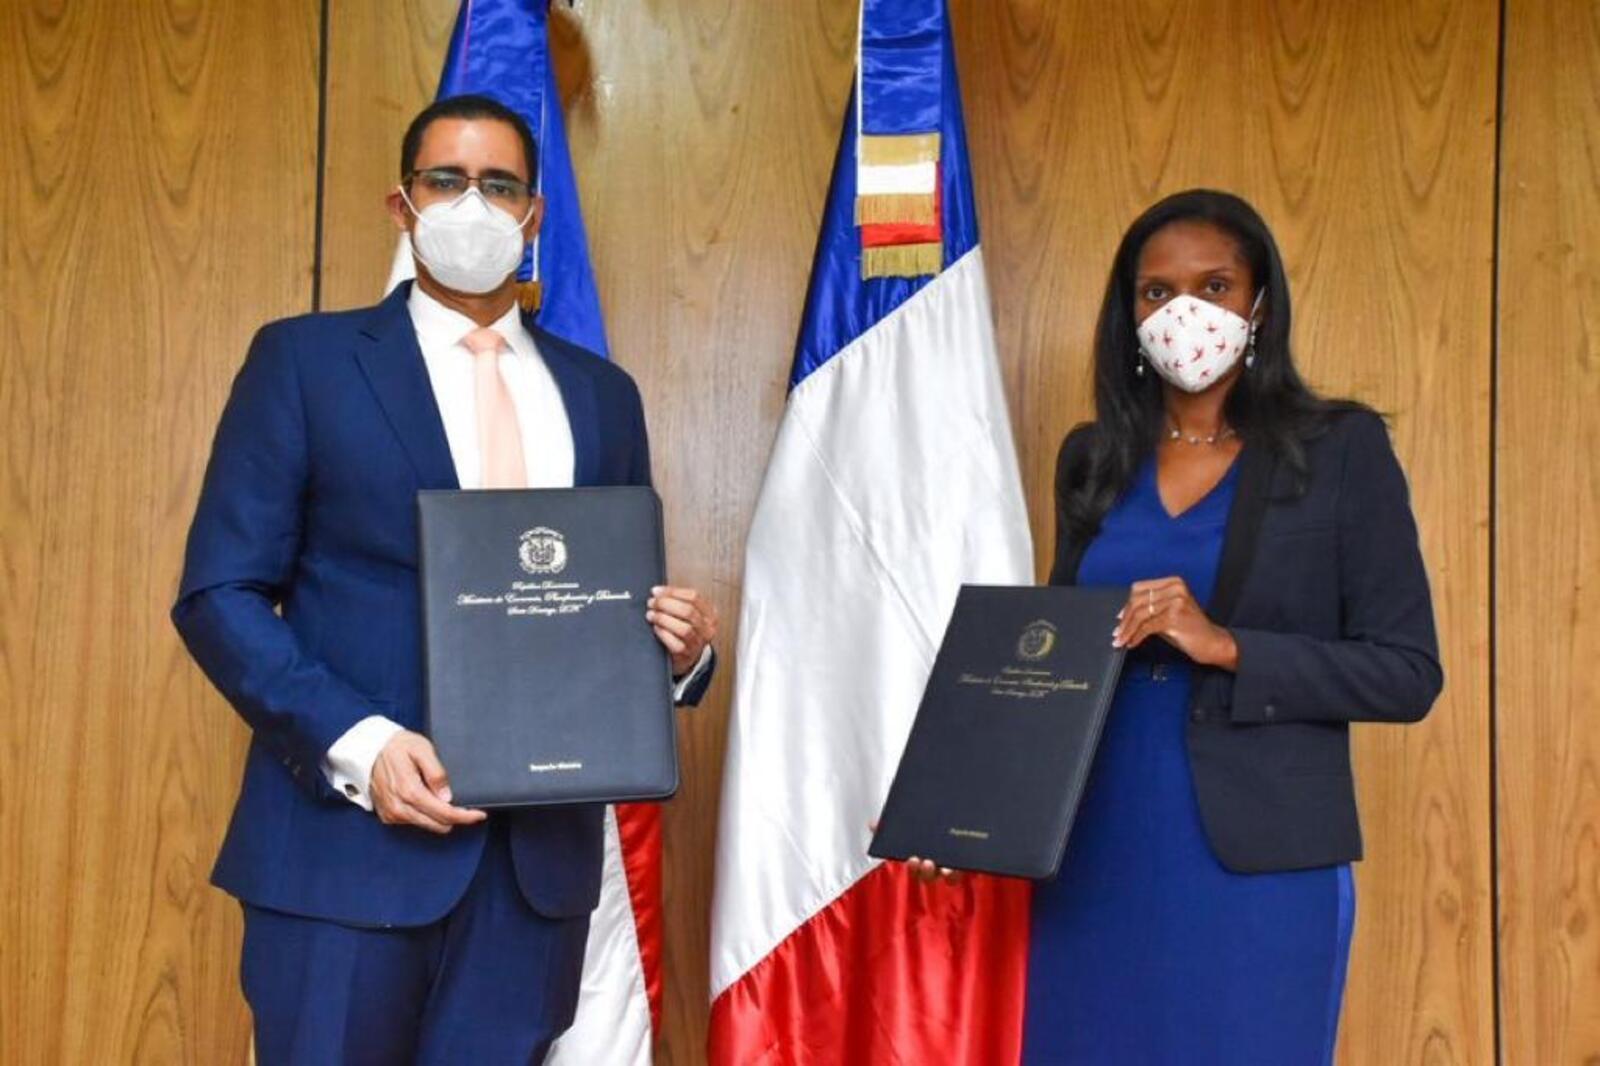 REPÚBLICA DOMINICANA: Vigilancia epidemiológica en República Dominicana recibe apoyo de Agencia Francesa de Desarrollo